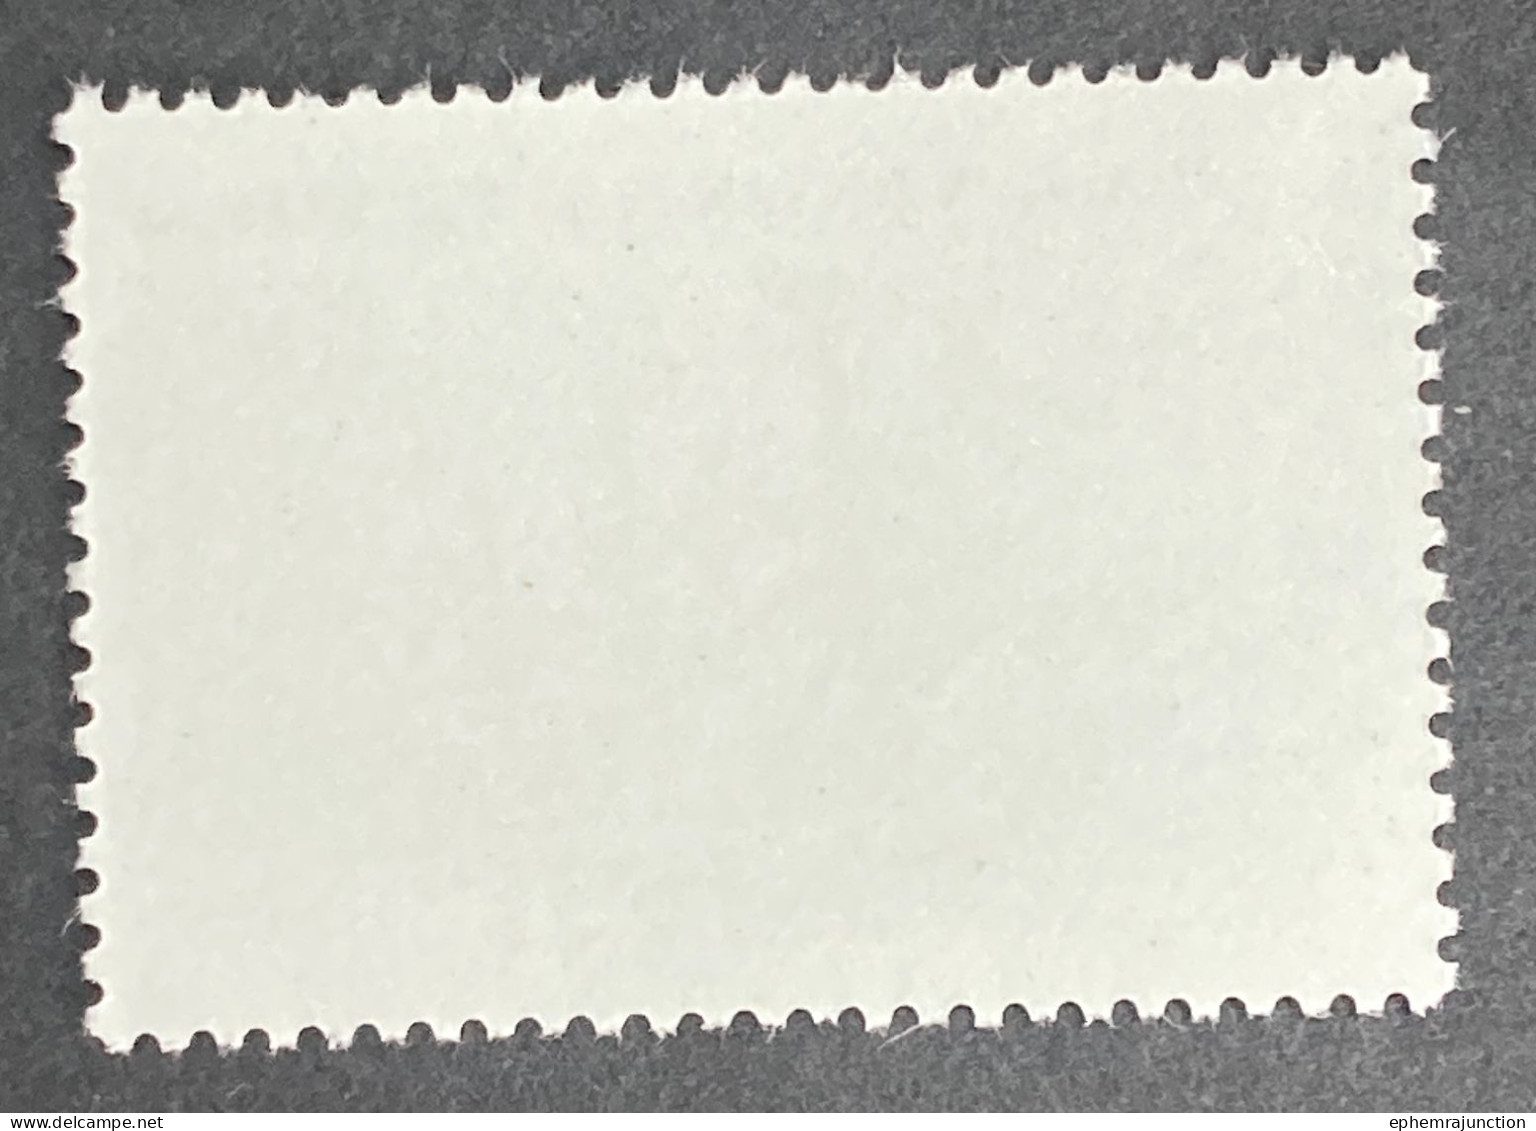 Nimrod 15c Australia Stamp 1980 Sg Aq 41 MNH - Ongebruikt